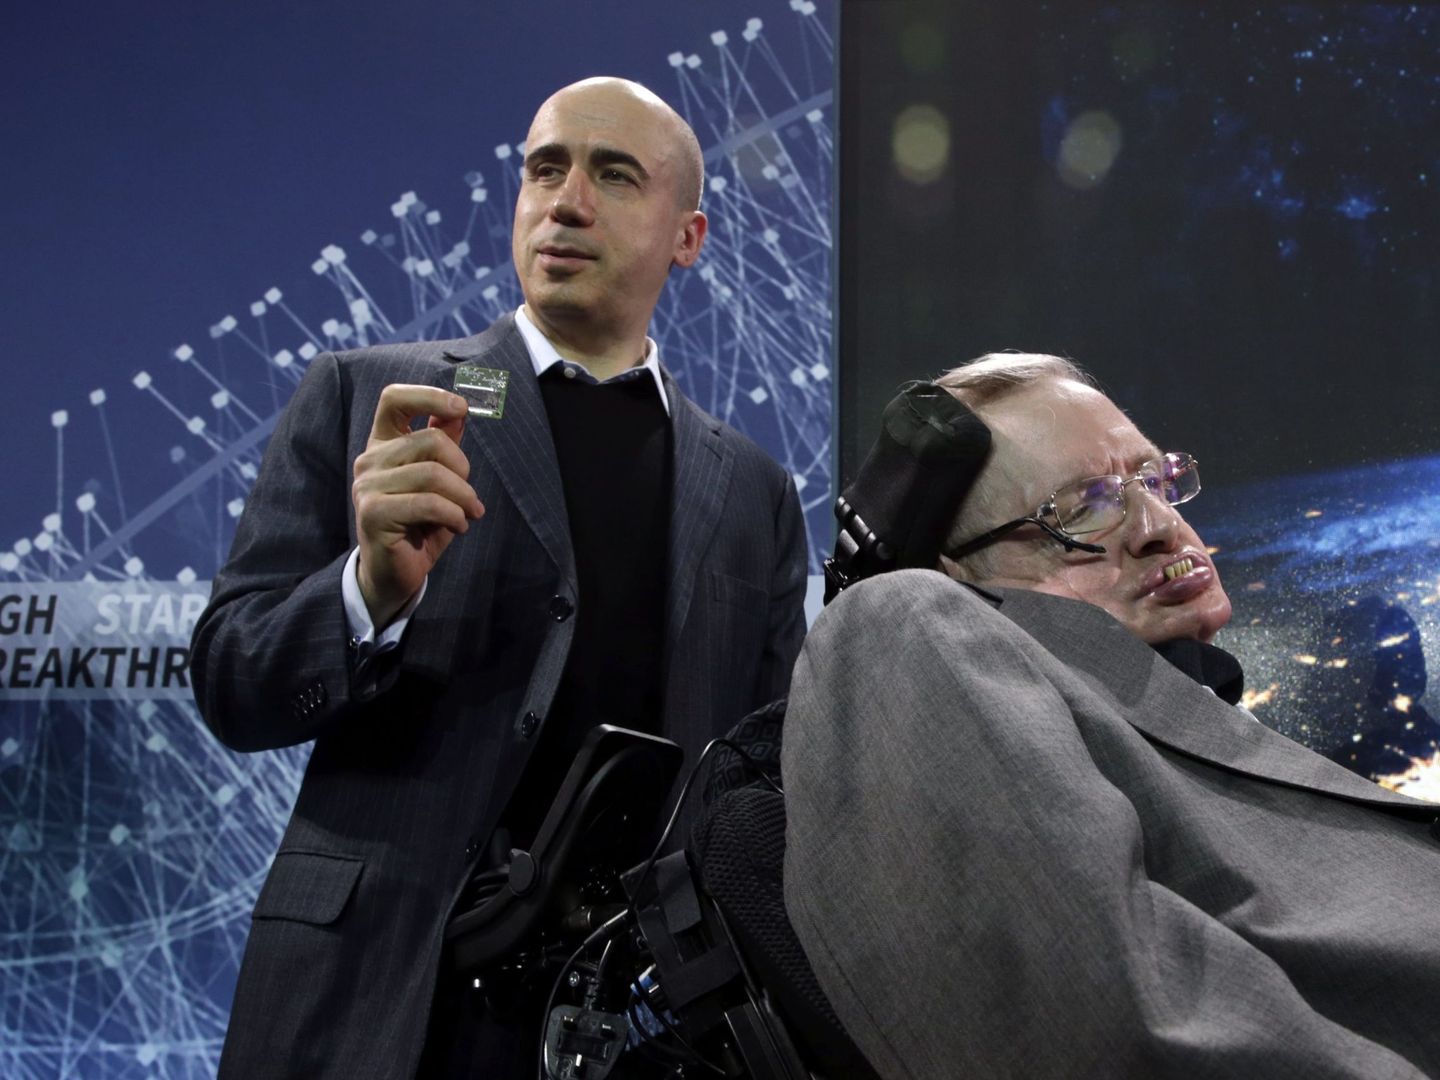 El multimillonario ruso Yuri Milner y el científico británico Stephen Hawking durante la presentación de 'Breakthrough Starshot' en Nueva York (Jason Szenes / EFE)